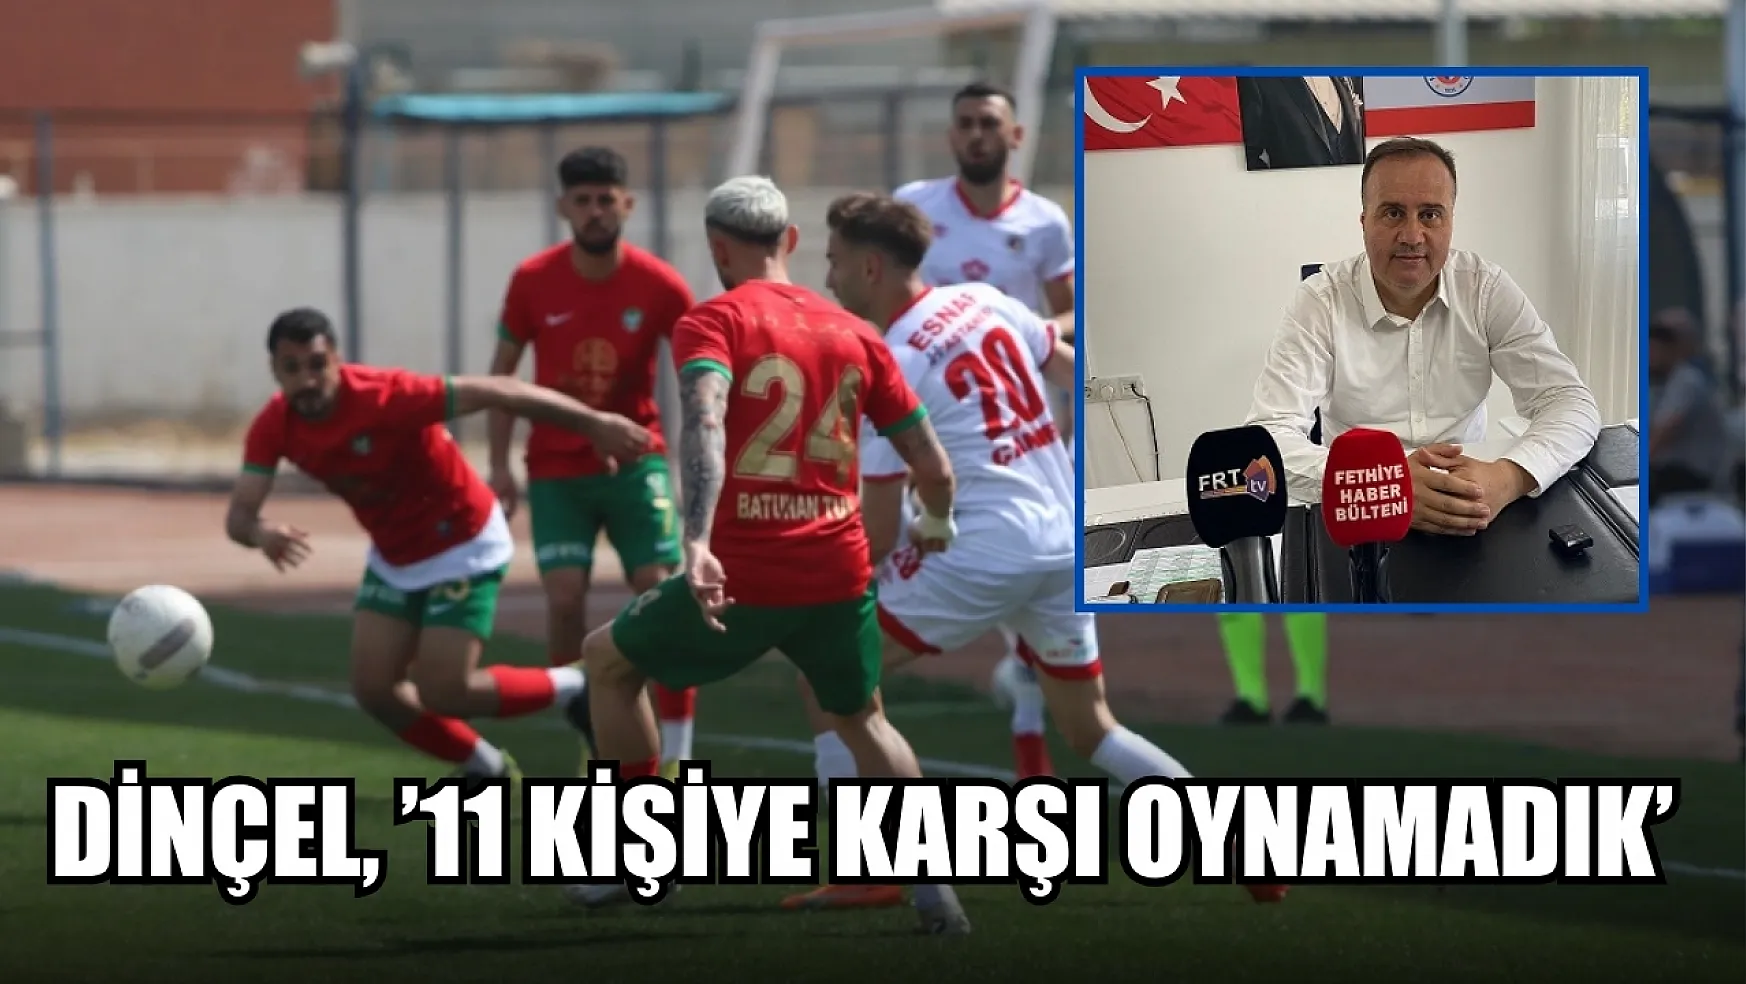 Dinçel, '11 kişiye karşı oynamadık' Fethiyespor – Amed Sportif değerlendirme